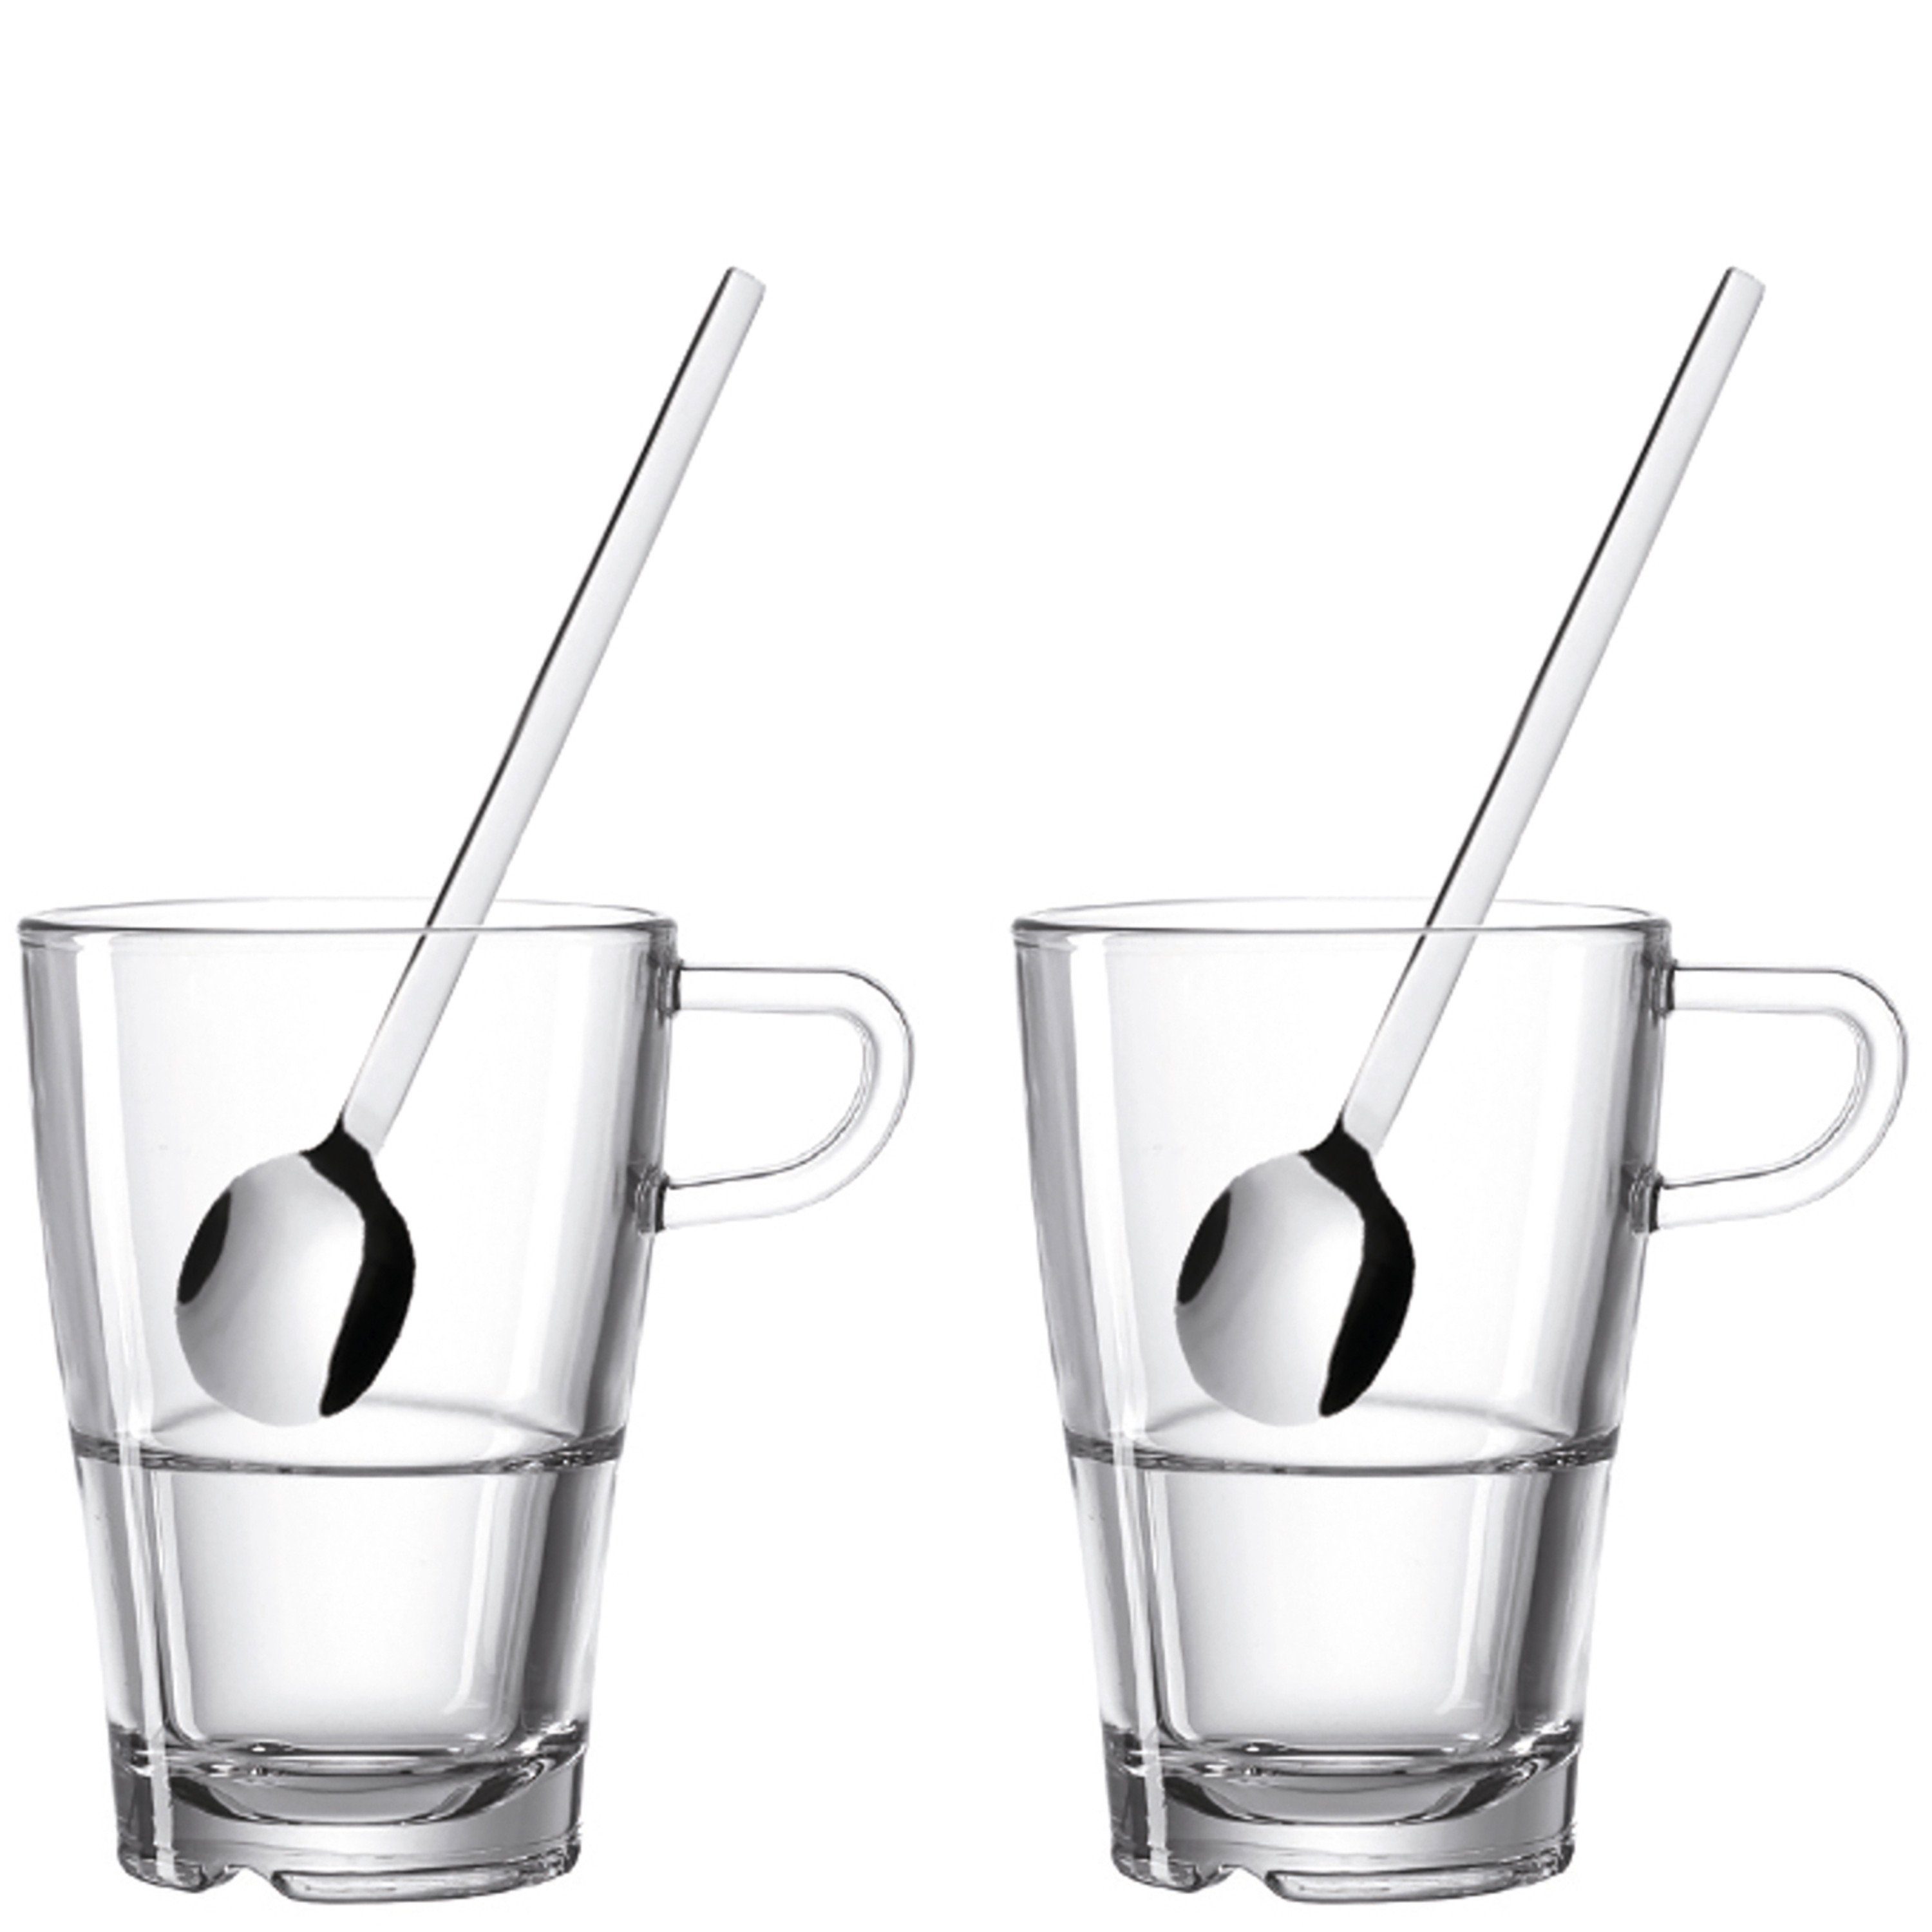 Glas Glas klarglas, LEONARDO Set aus SENSO, Löffeln, Serie 4-teilig 2 bestehend aus der LEONARDO Gläsern langen Macchiato 2 und